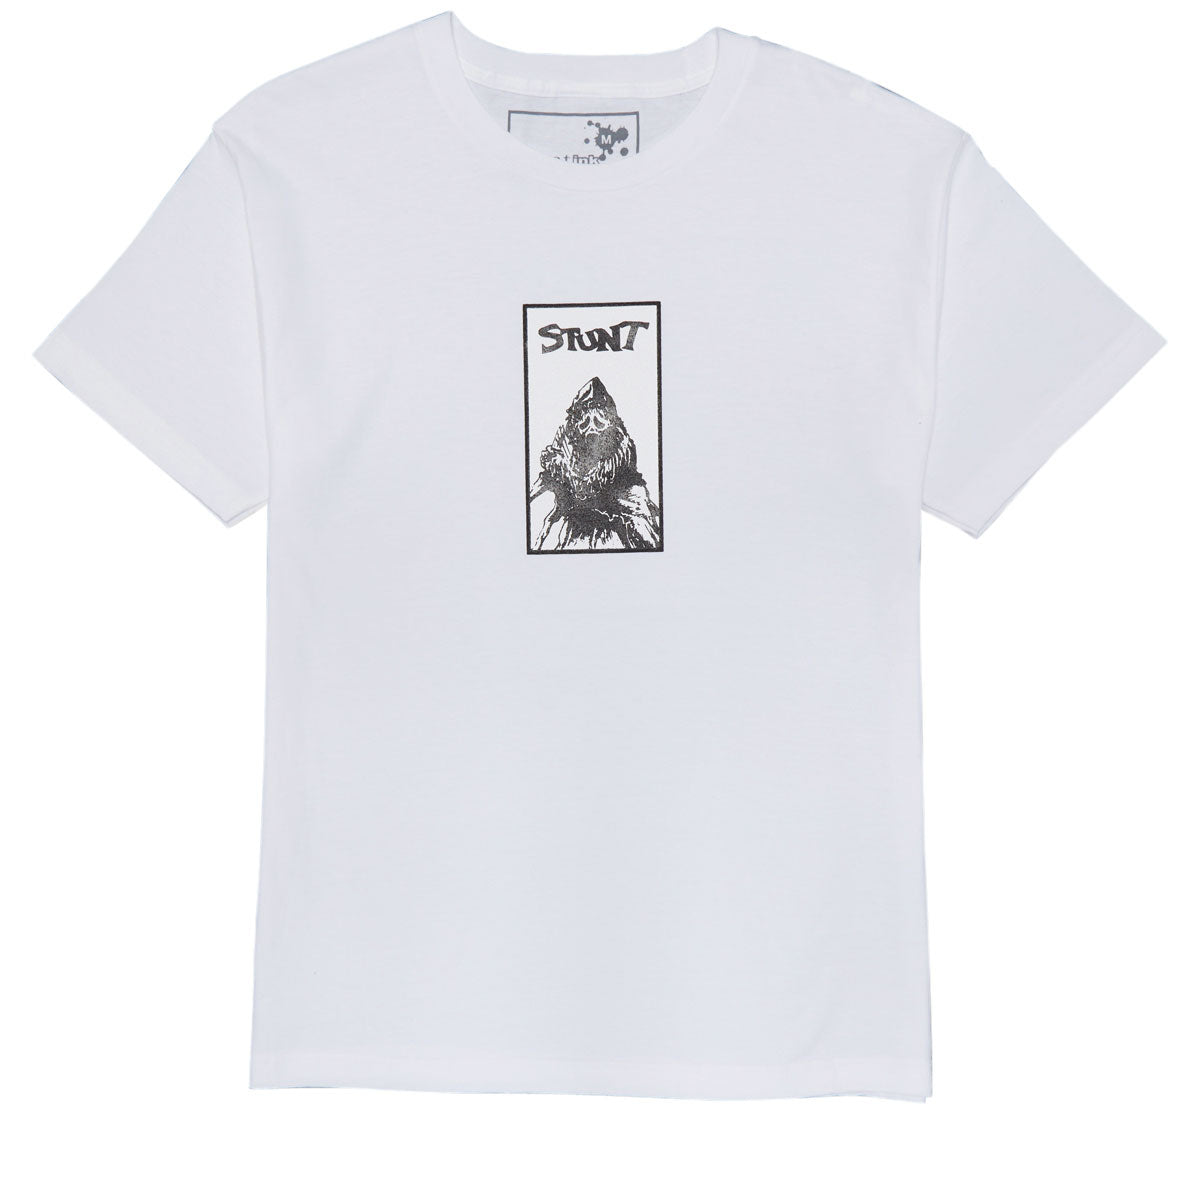 Stunt Ripper T-Shirt - White image 1